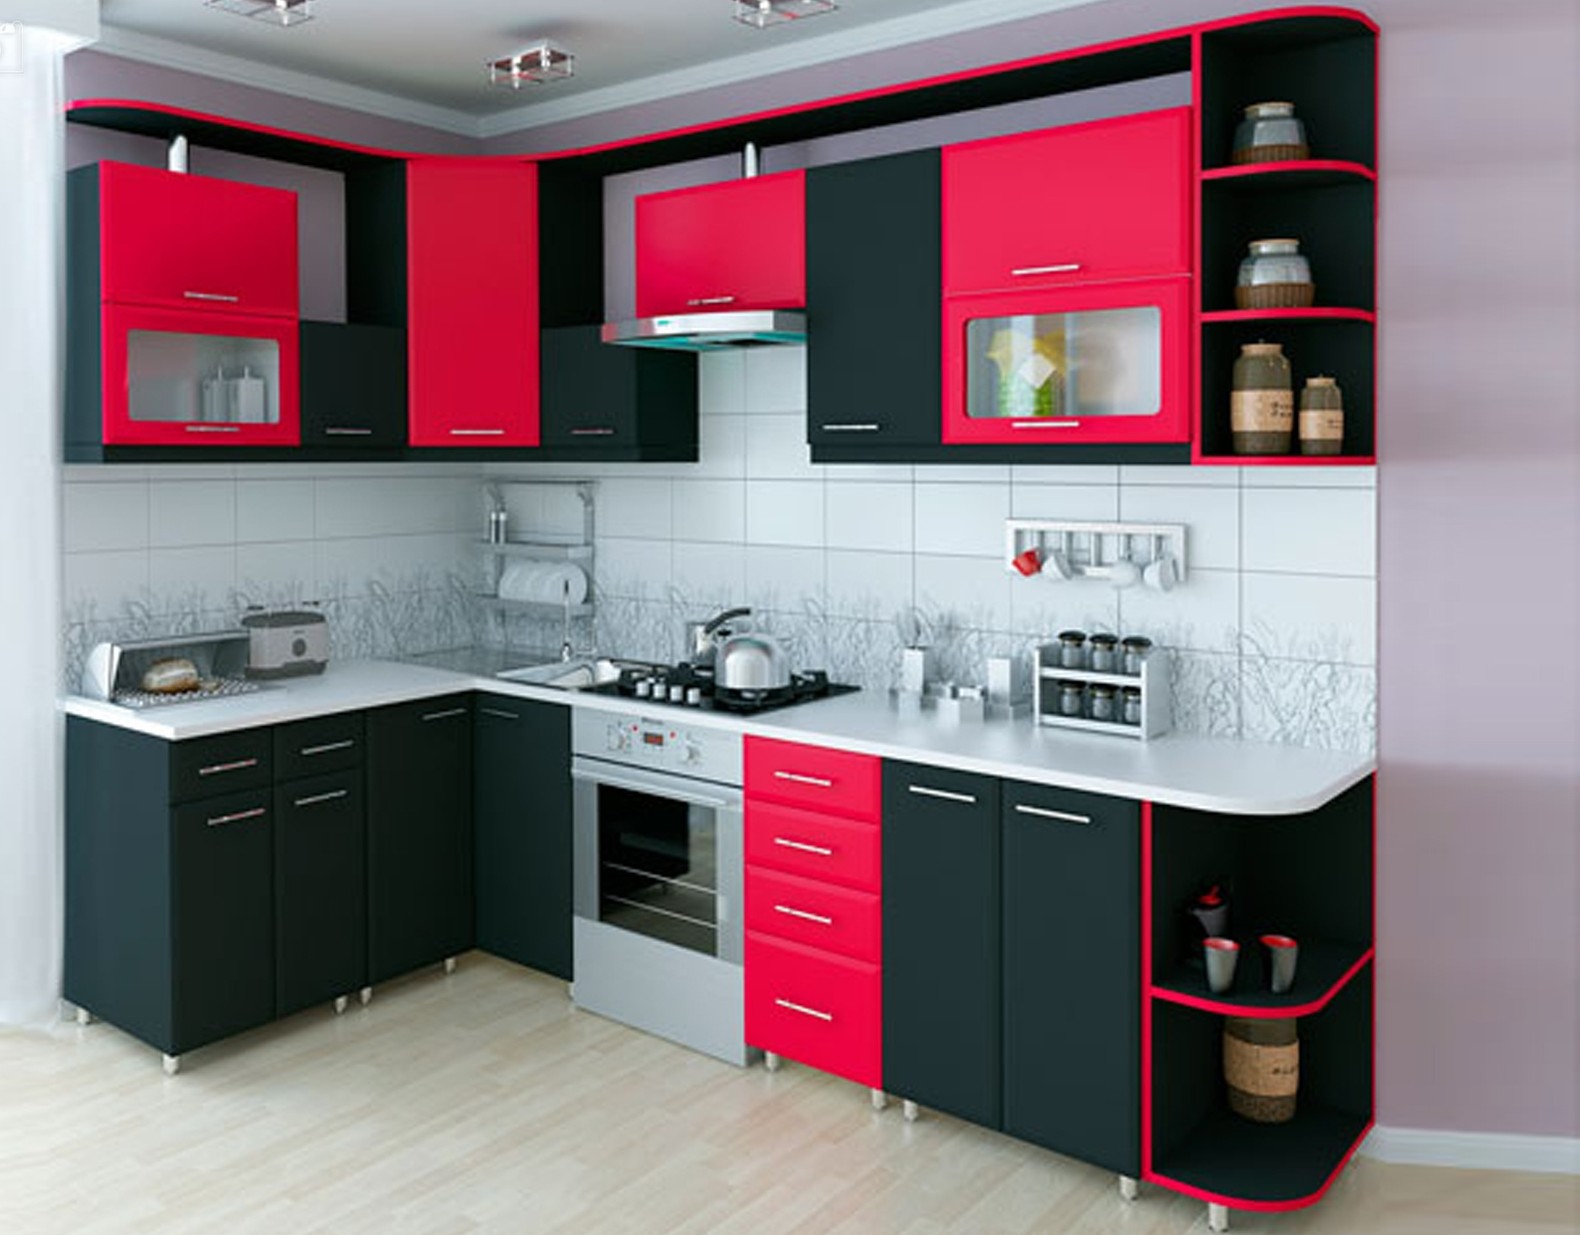 Сборка мебели ами. Кухня угловая красная. Кухонный гарнитур угловой черно красный. Угловые кухни из пластика. Ами мебель кухни.